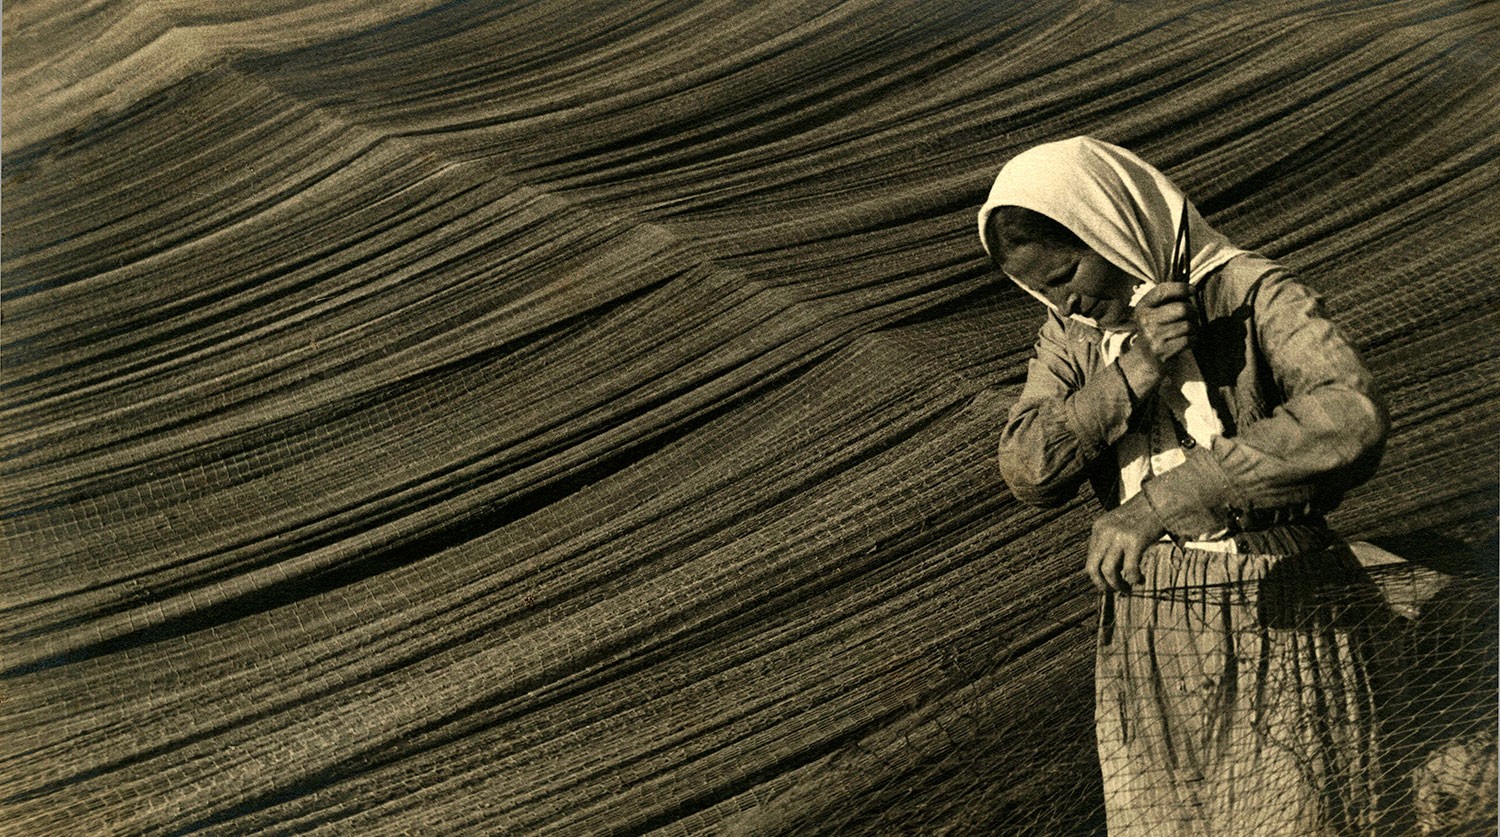 Починка сетей на Волге, 1934. Фотограф Михаил Прехнер